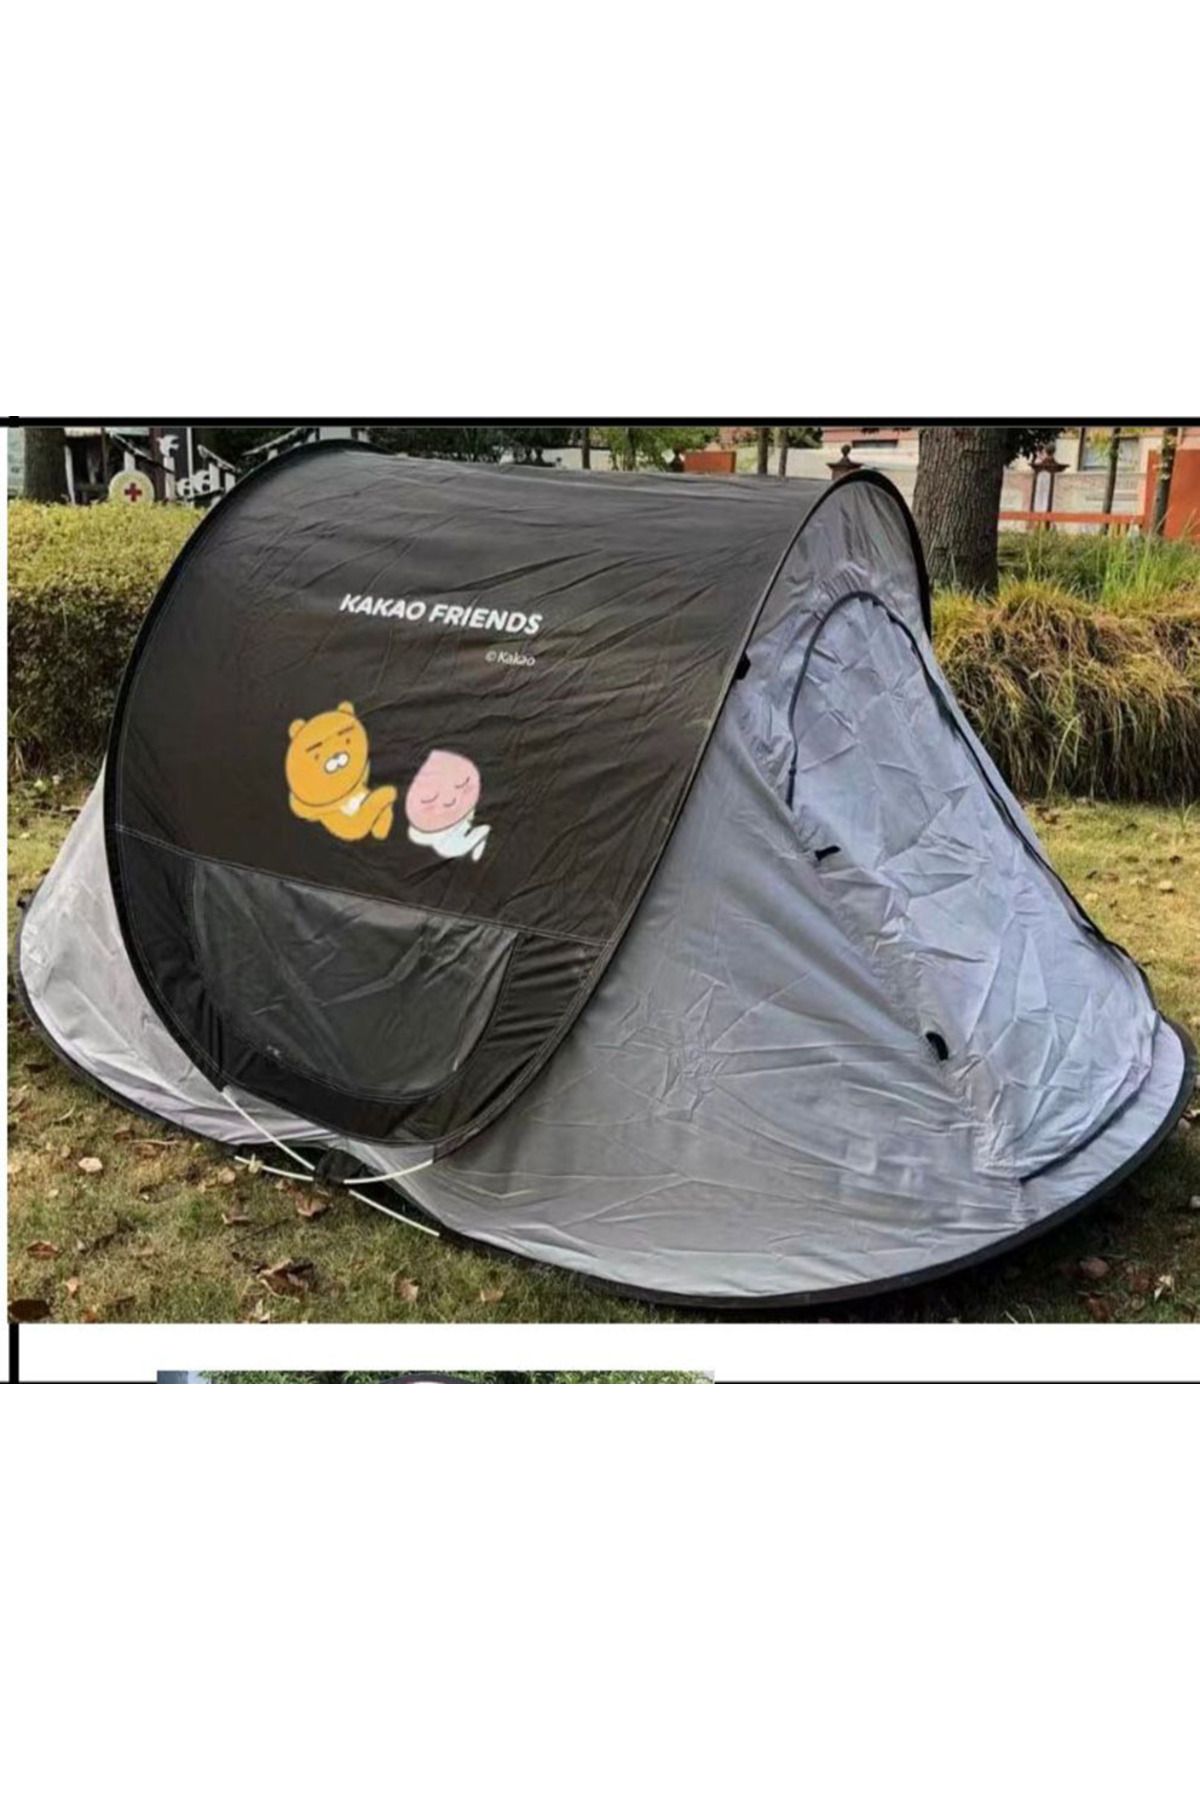 Genel Markalar 3 Kişilik Otomatik Kamp Çadırı Sineklikli Taşıma Çantalı Kolay Kurulum Çadır 250x150x110cm